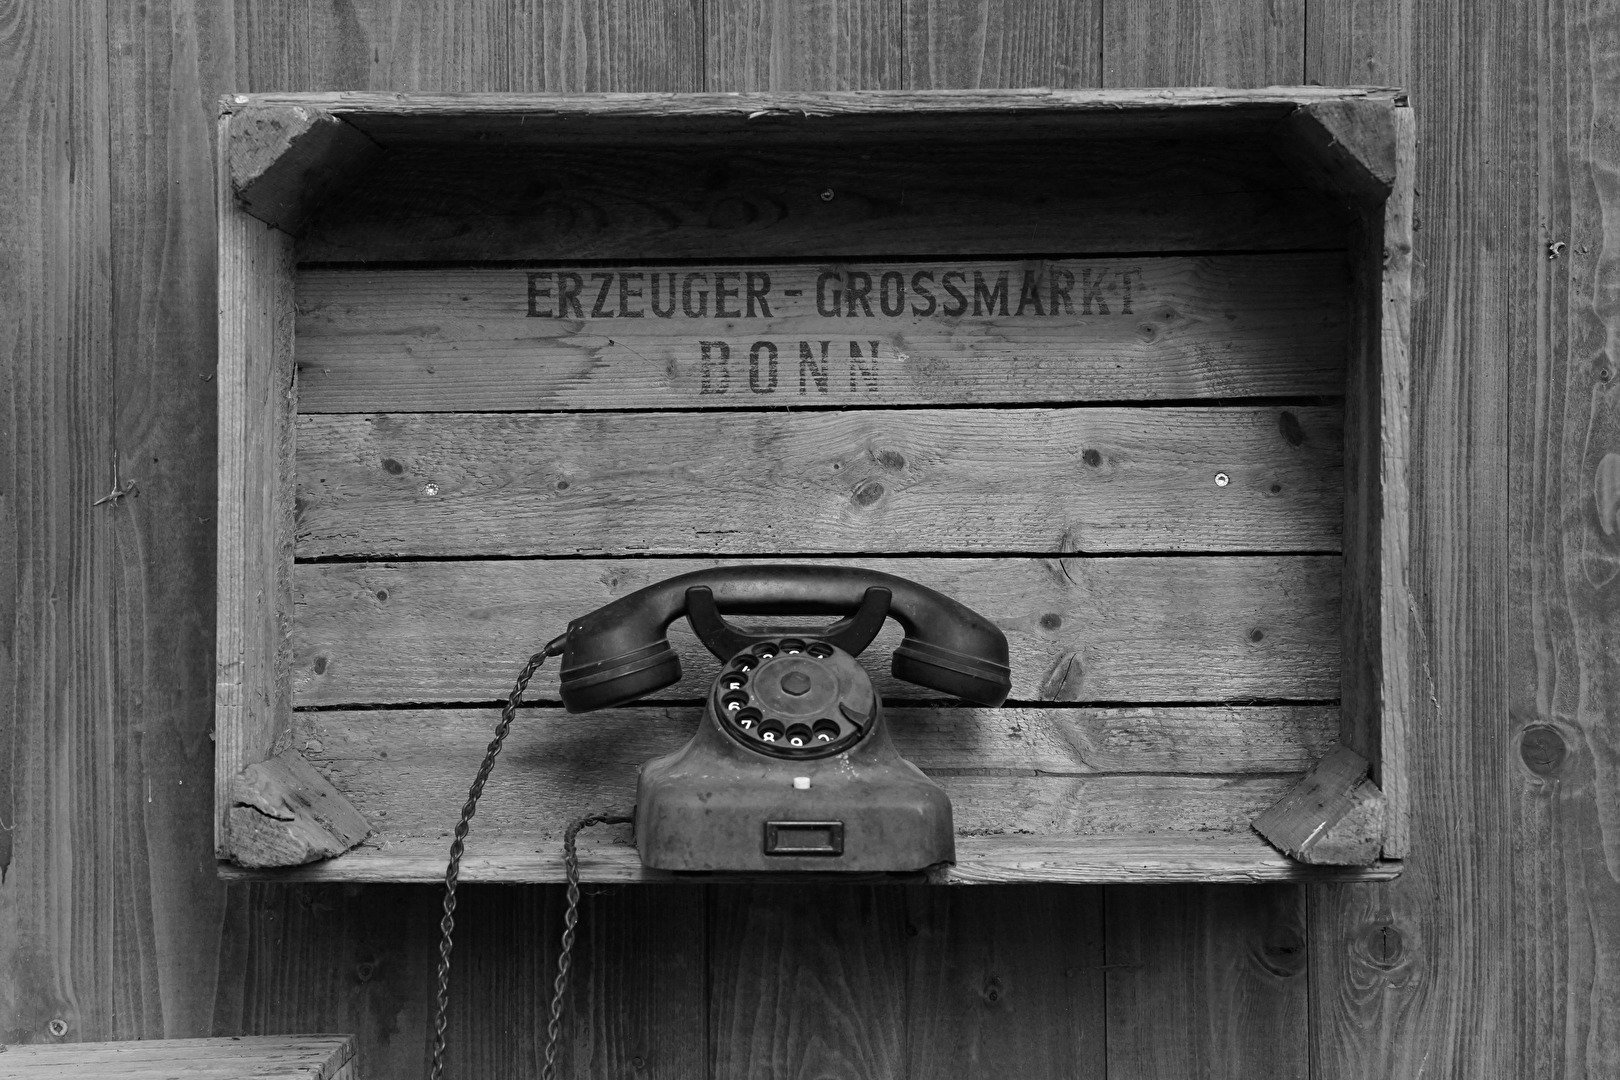 Das Telefon des Erzeugers